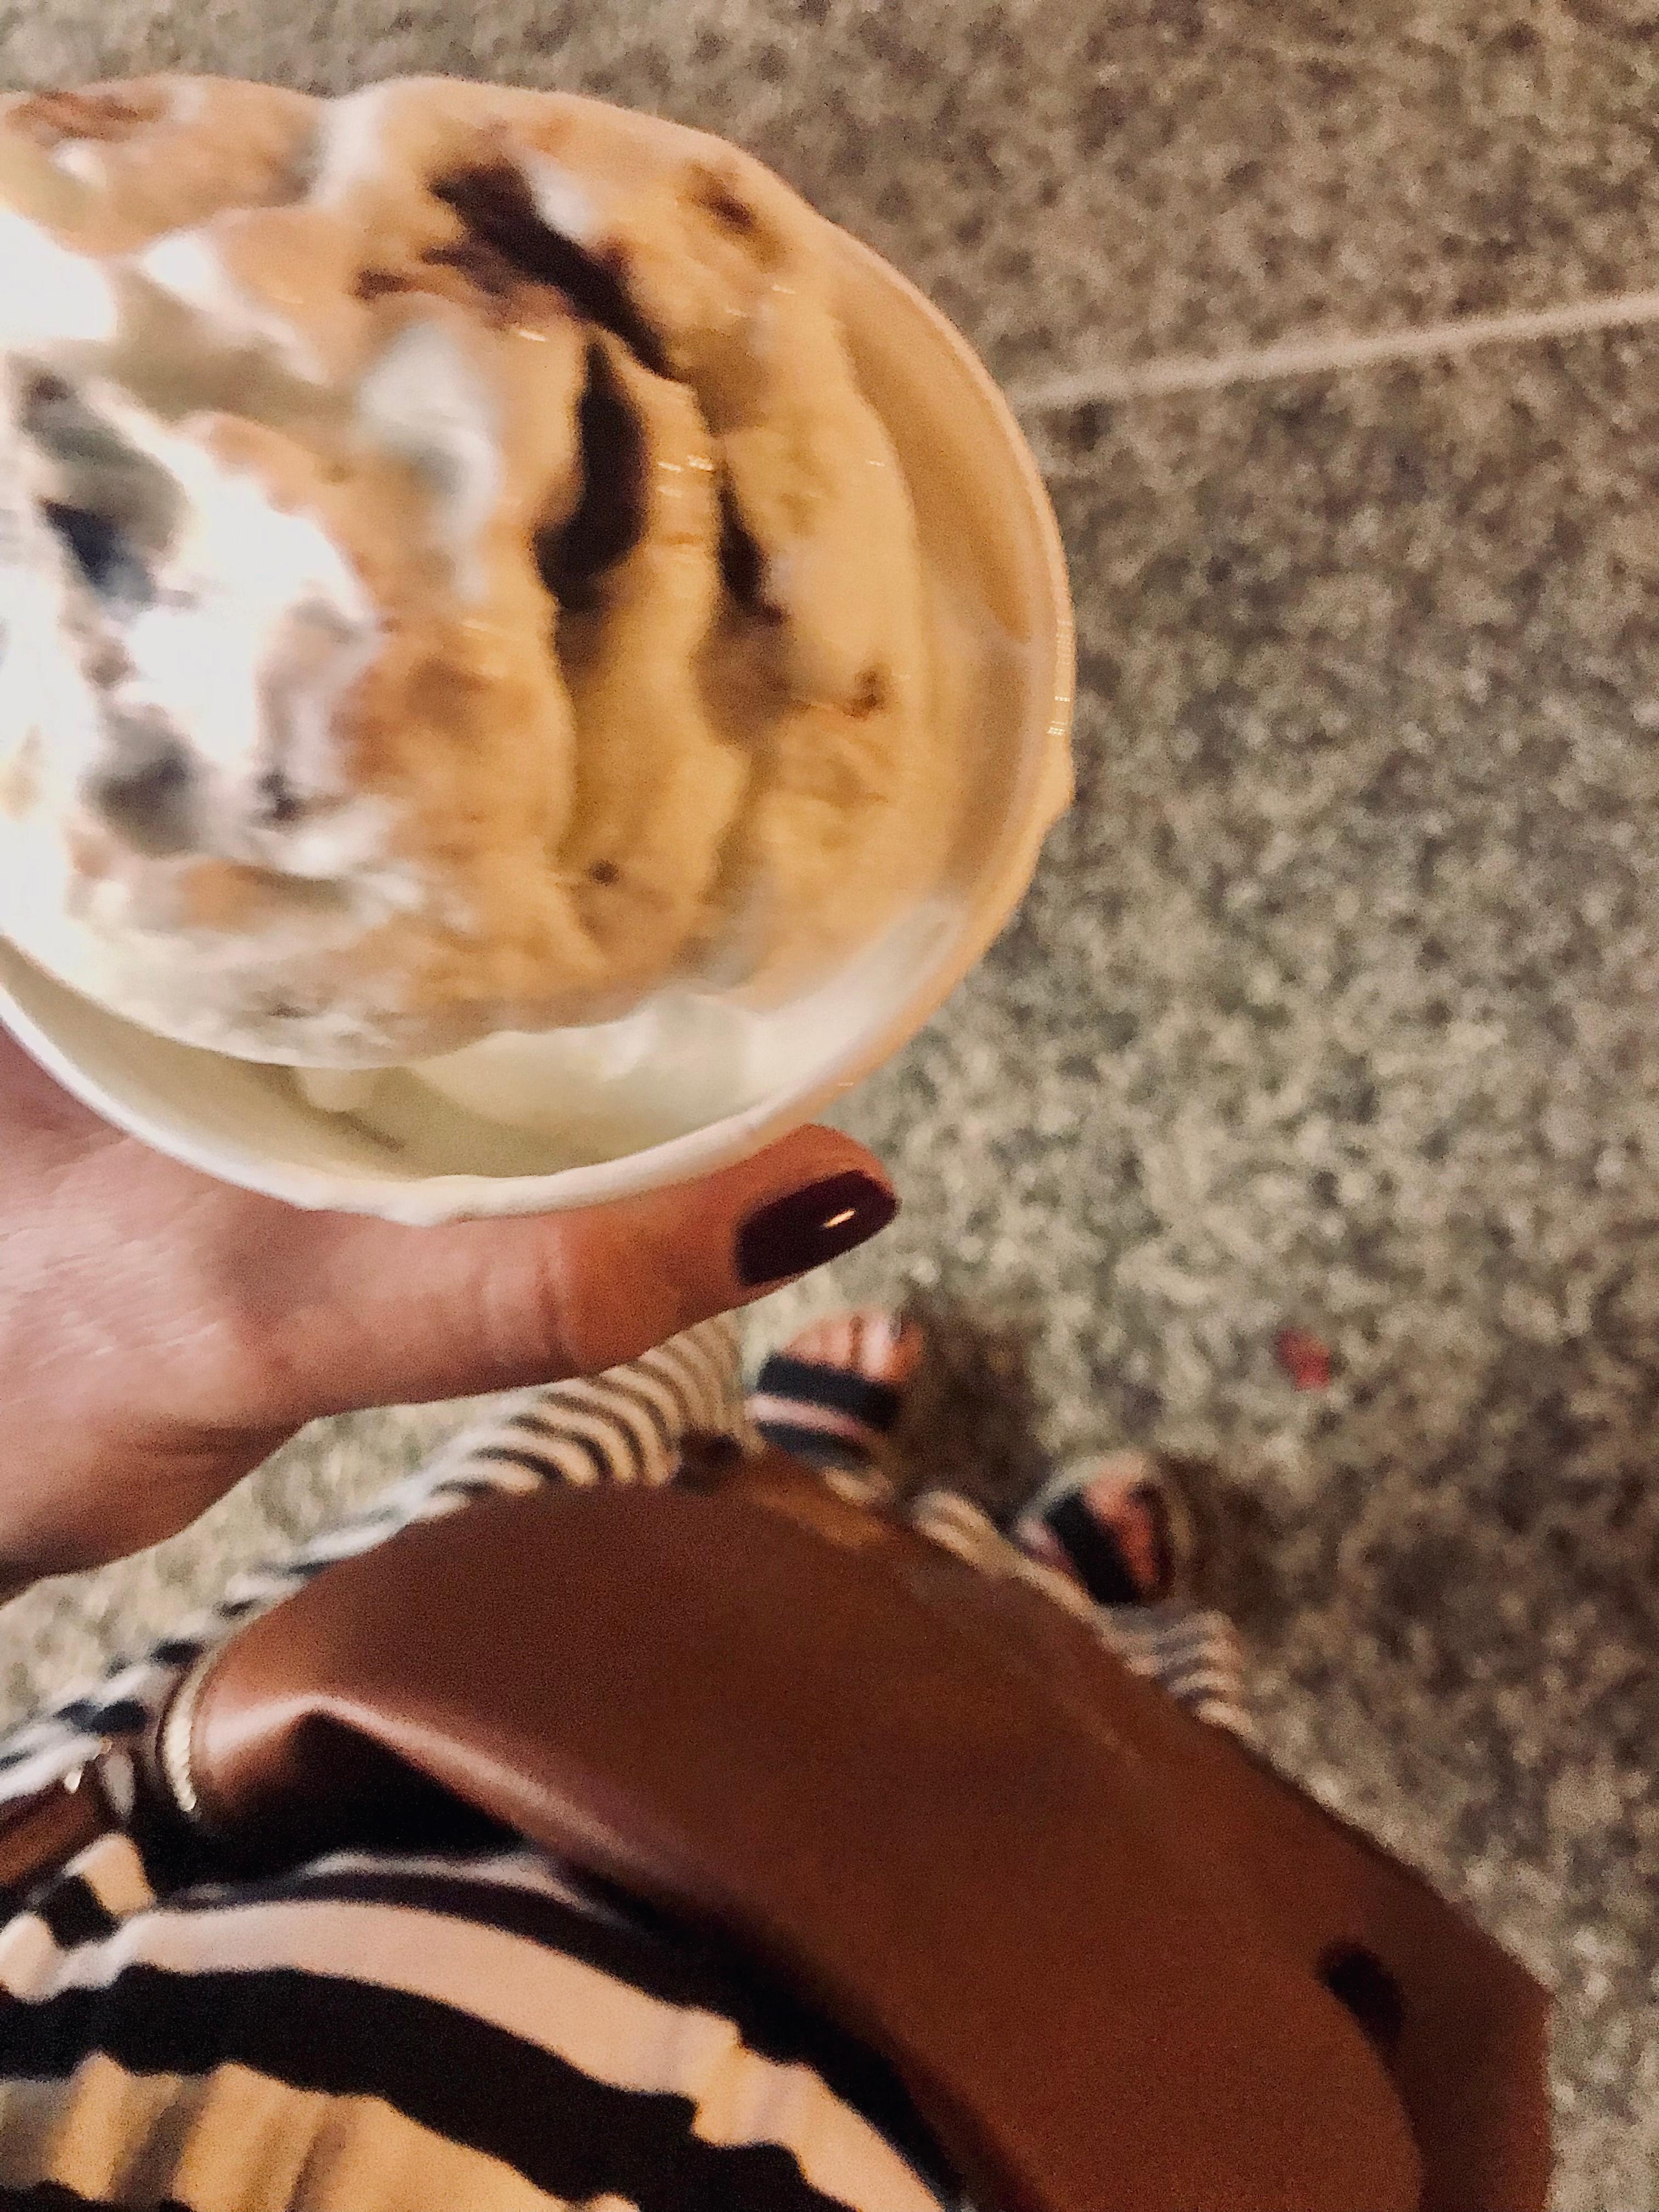 Sonntagabend 26 Grad Zeit für ein #gelato #urlaub #bellaitalia #sommer #kleid #tasche #sandale 